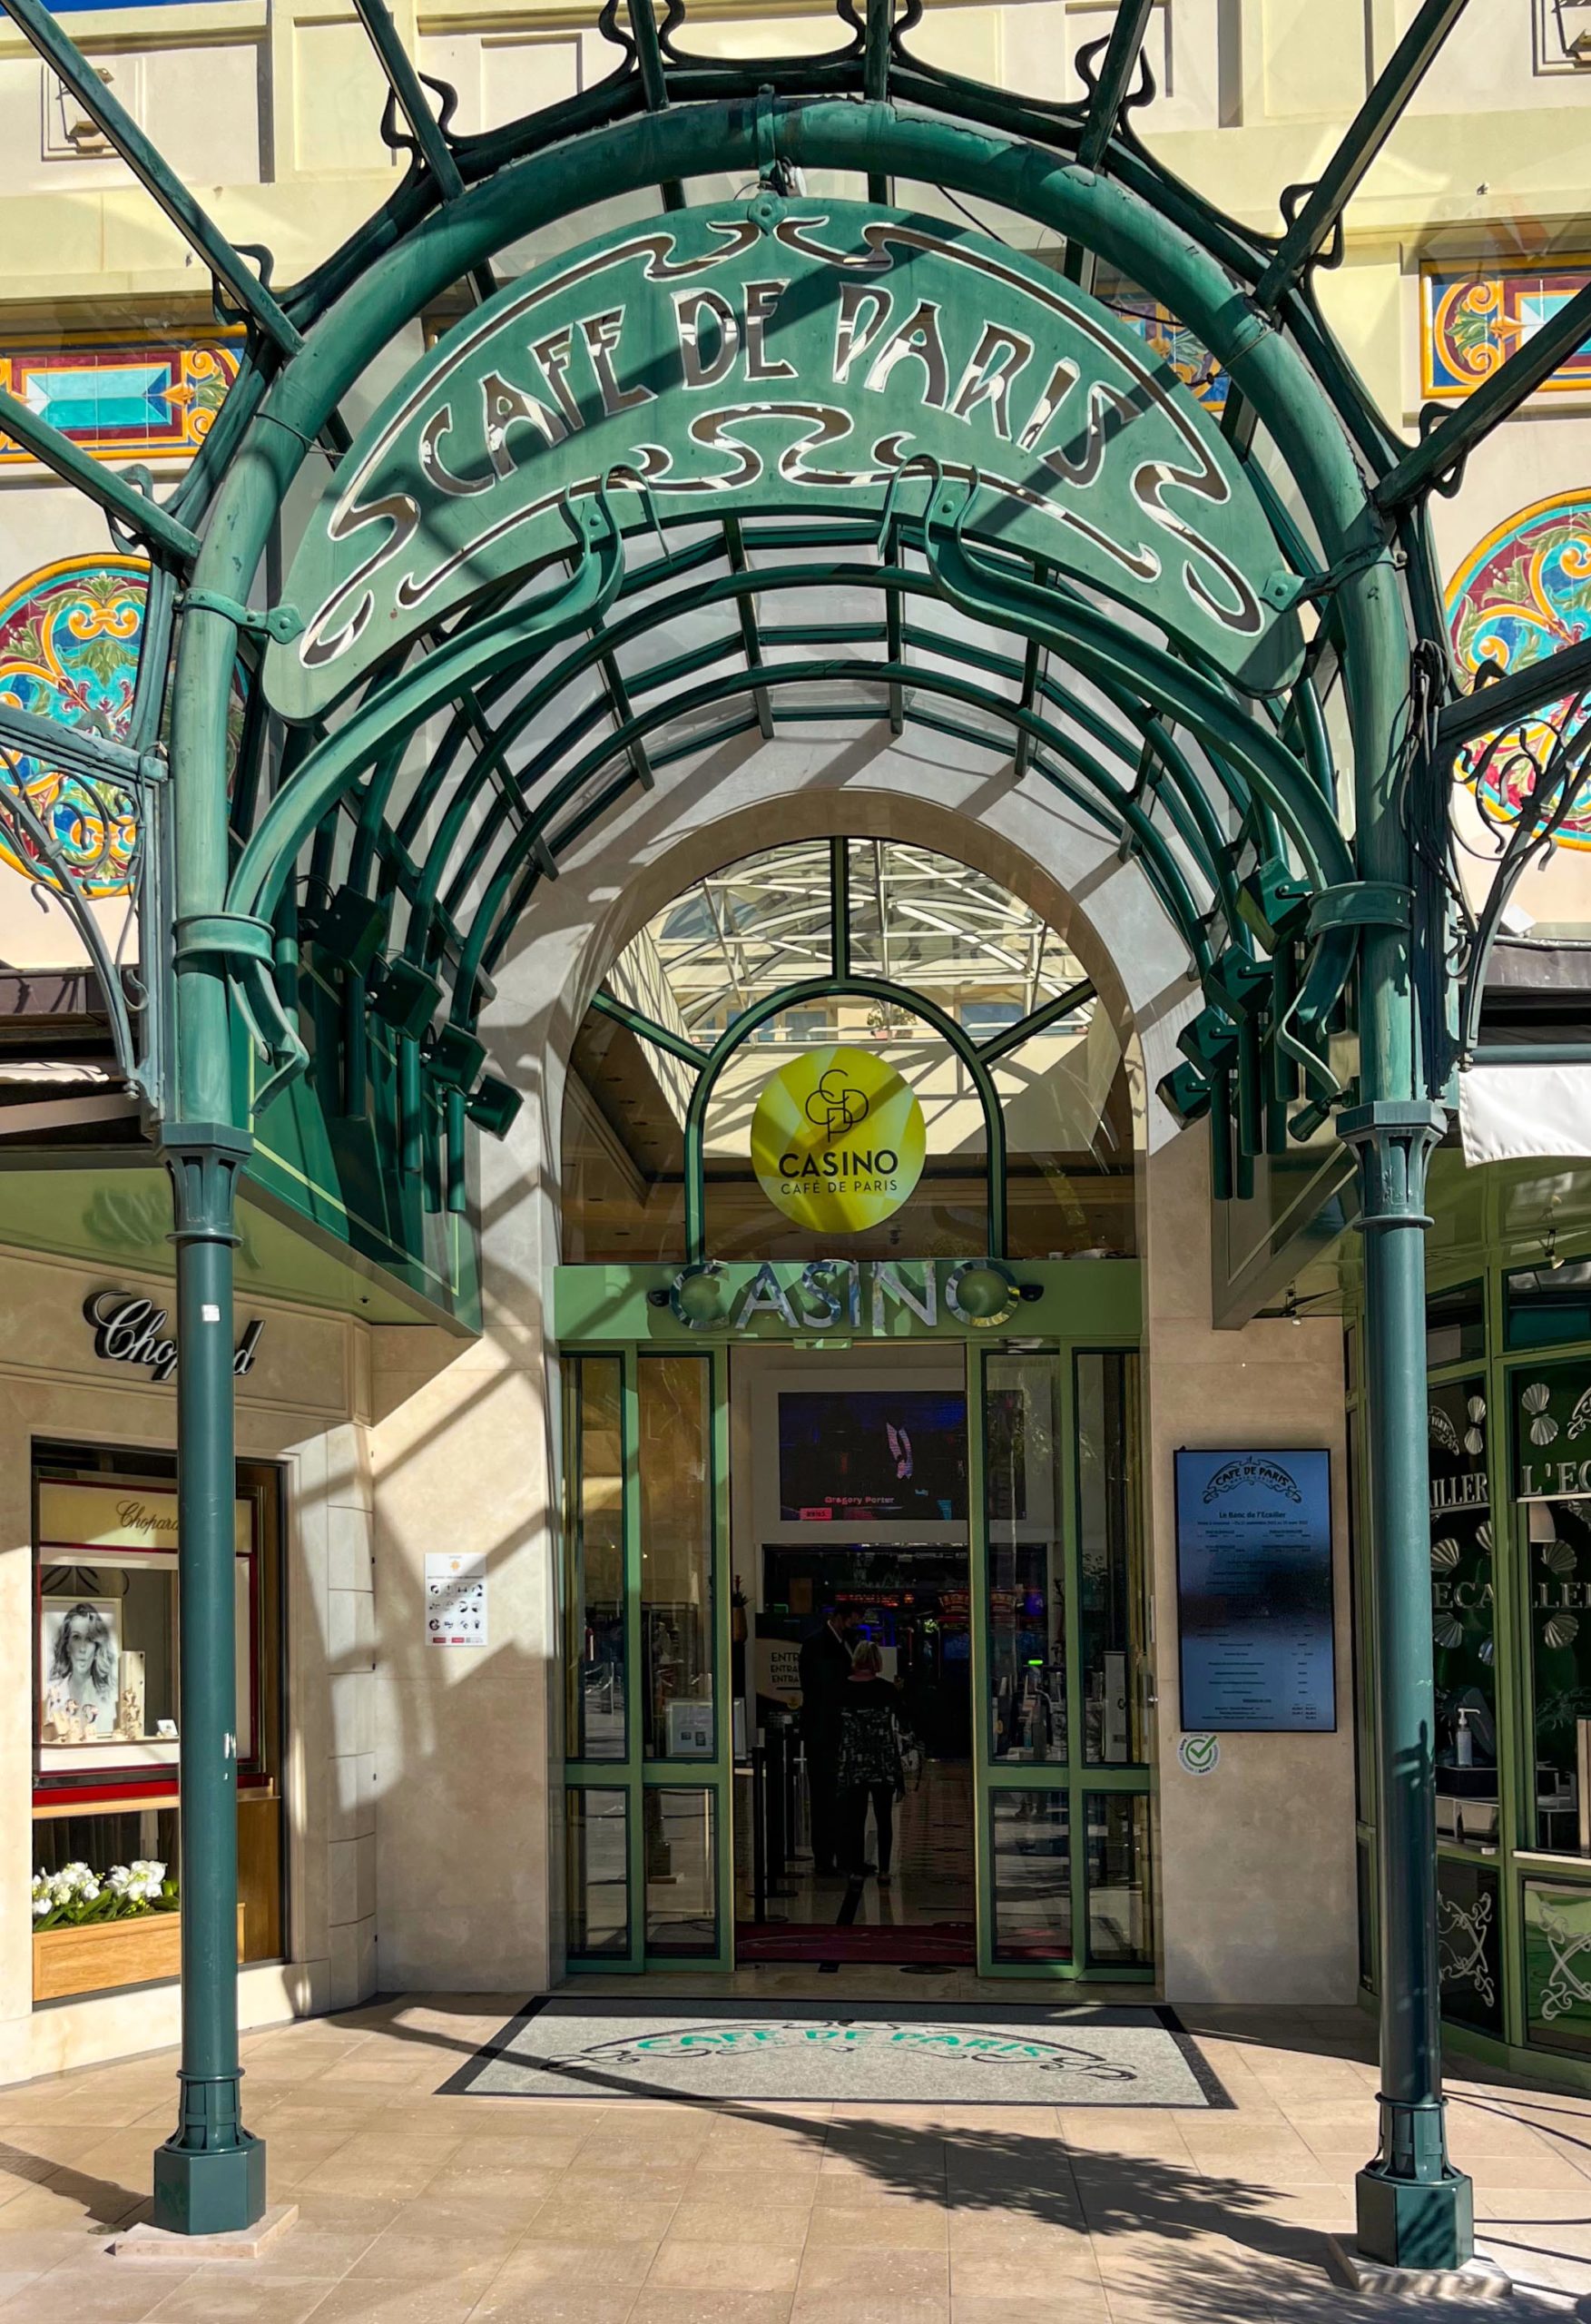 Monte-Carlo Café de Paris © Benoît Prieur - licence [CC0] from Wikimedia Commons